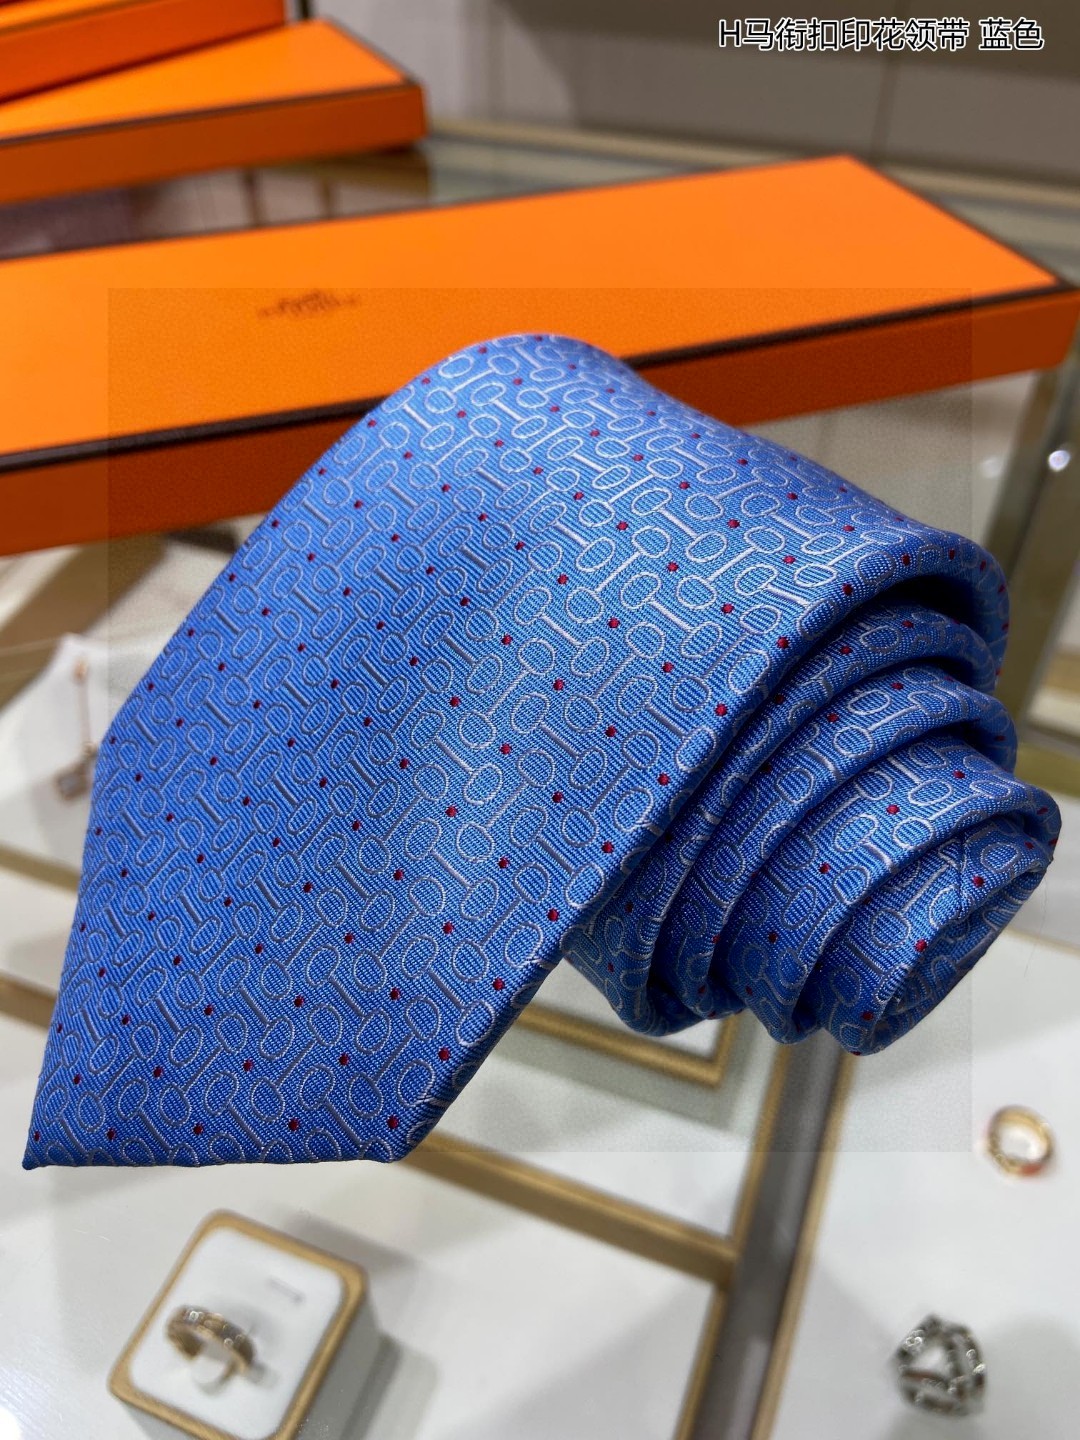 男士新款领带系列H马衔扣印花领带稀有H家每年都有一千条不同印花的领带面世从最初的多以几何图案表现骑术活动